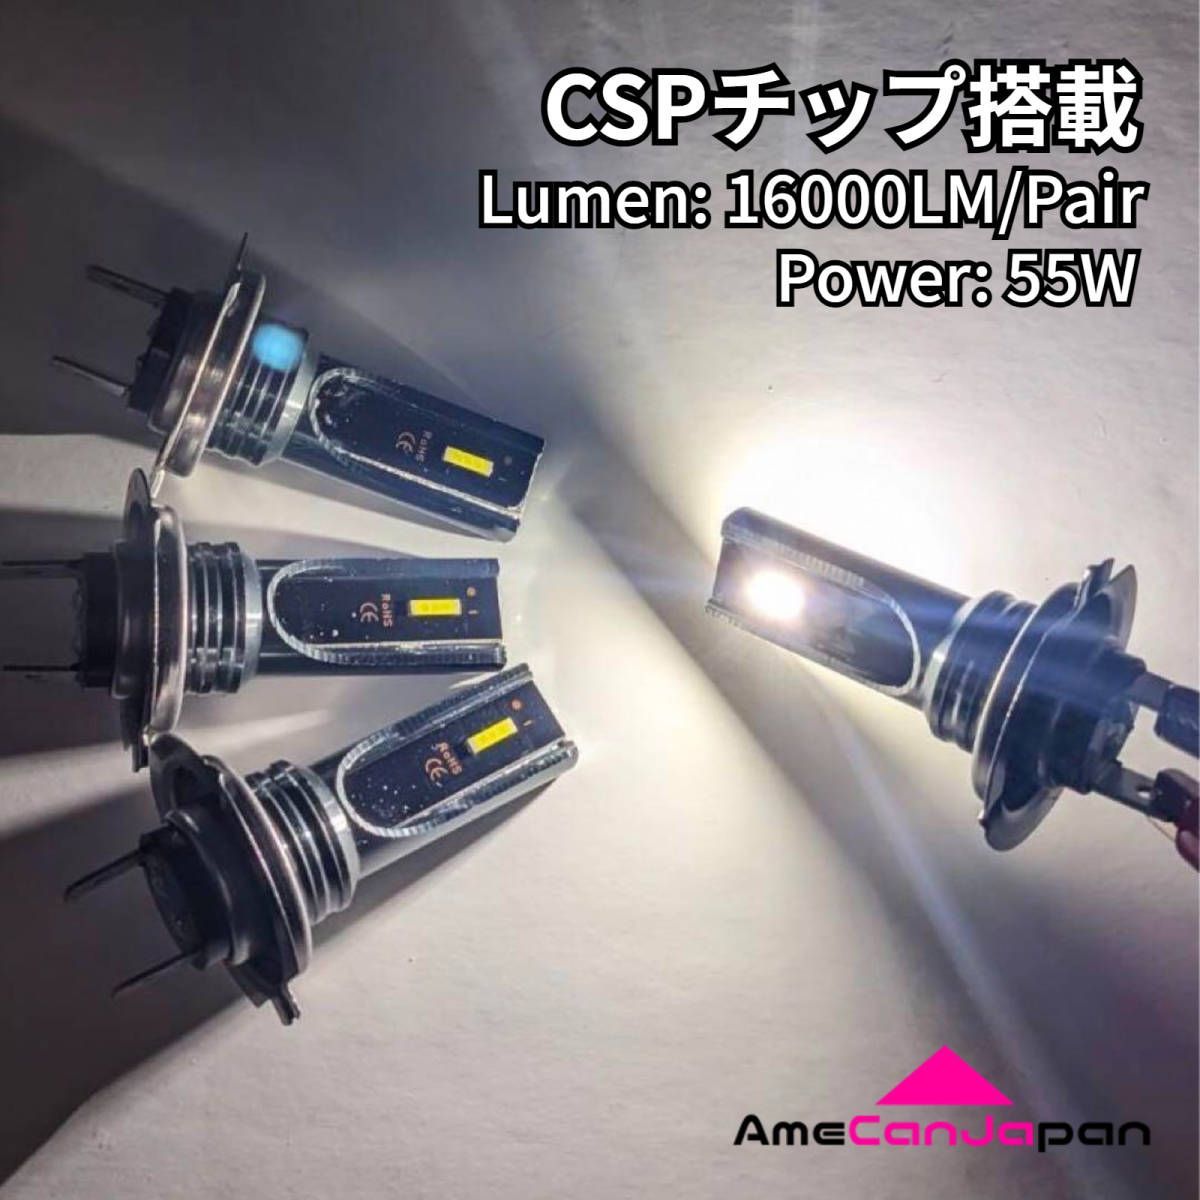 AmeCanJapan HONDA CBR600RR PC37 適合 H7 LED ヘッドライト バイク用 Hi LOW ホワイト 2灯 爆光  CSPチップ搭載 パーツ バイク用品 - メルカリ